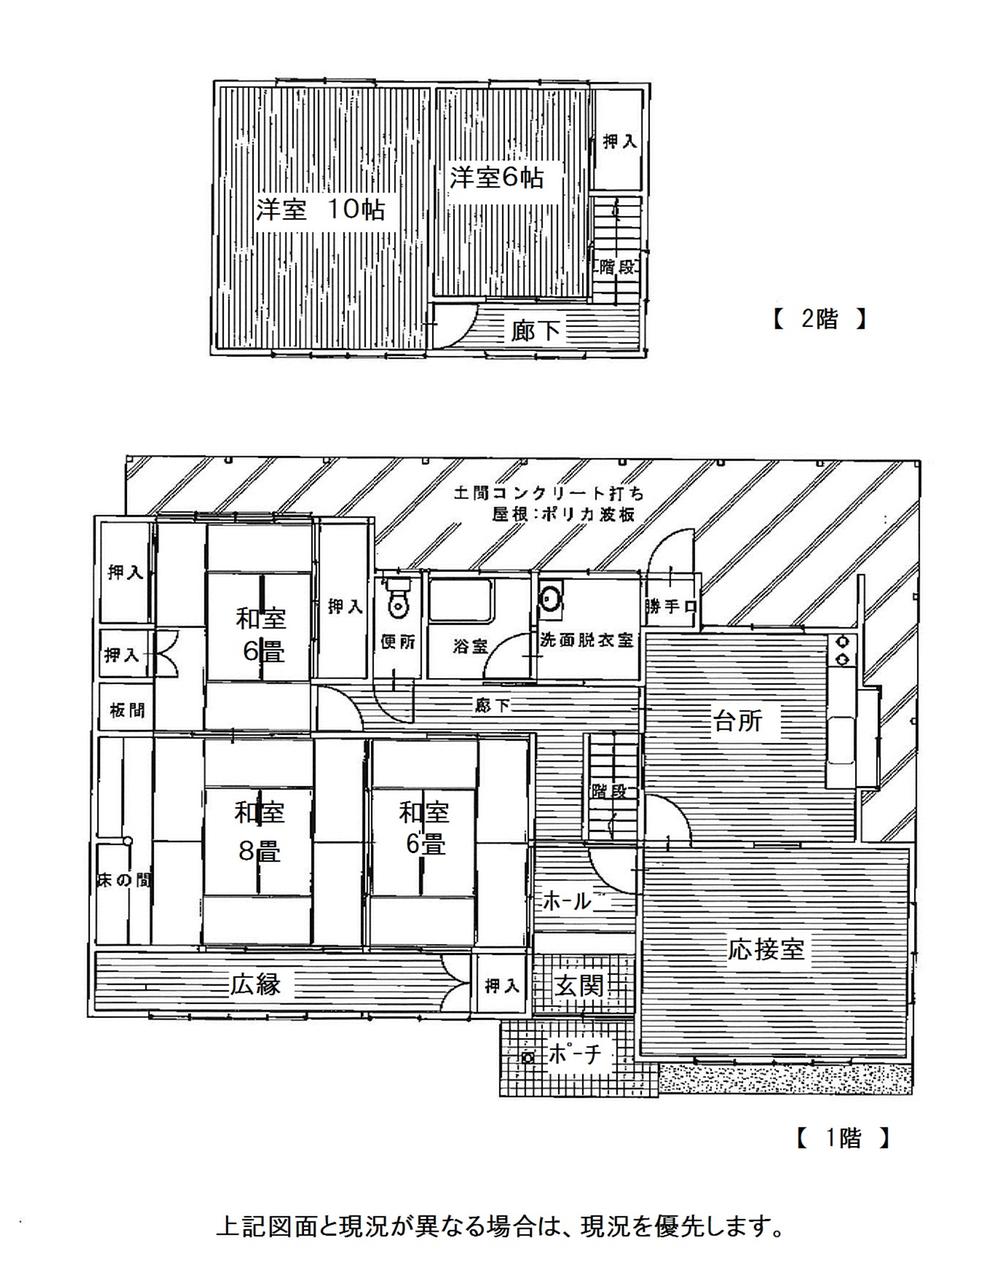 Floor plan. 21 million yen, 6DK, Land area 462.82 sq m , Building area 150.41 sq m